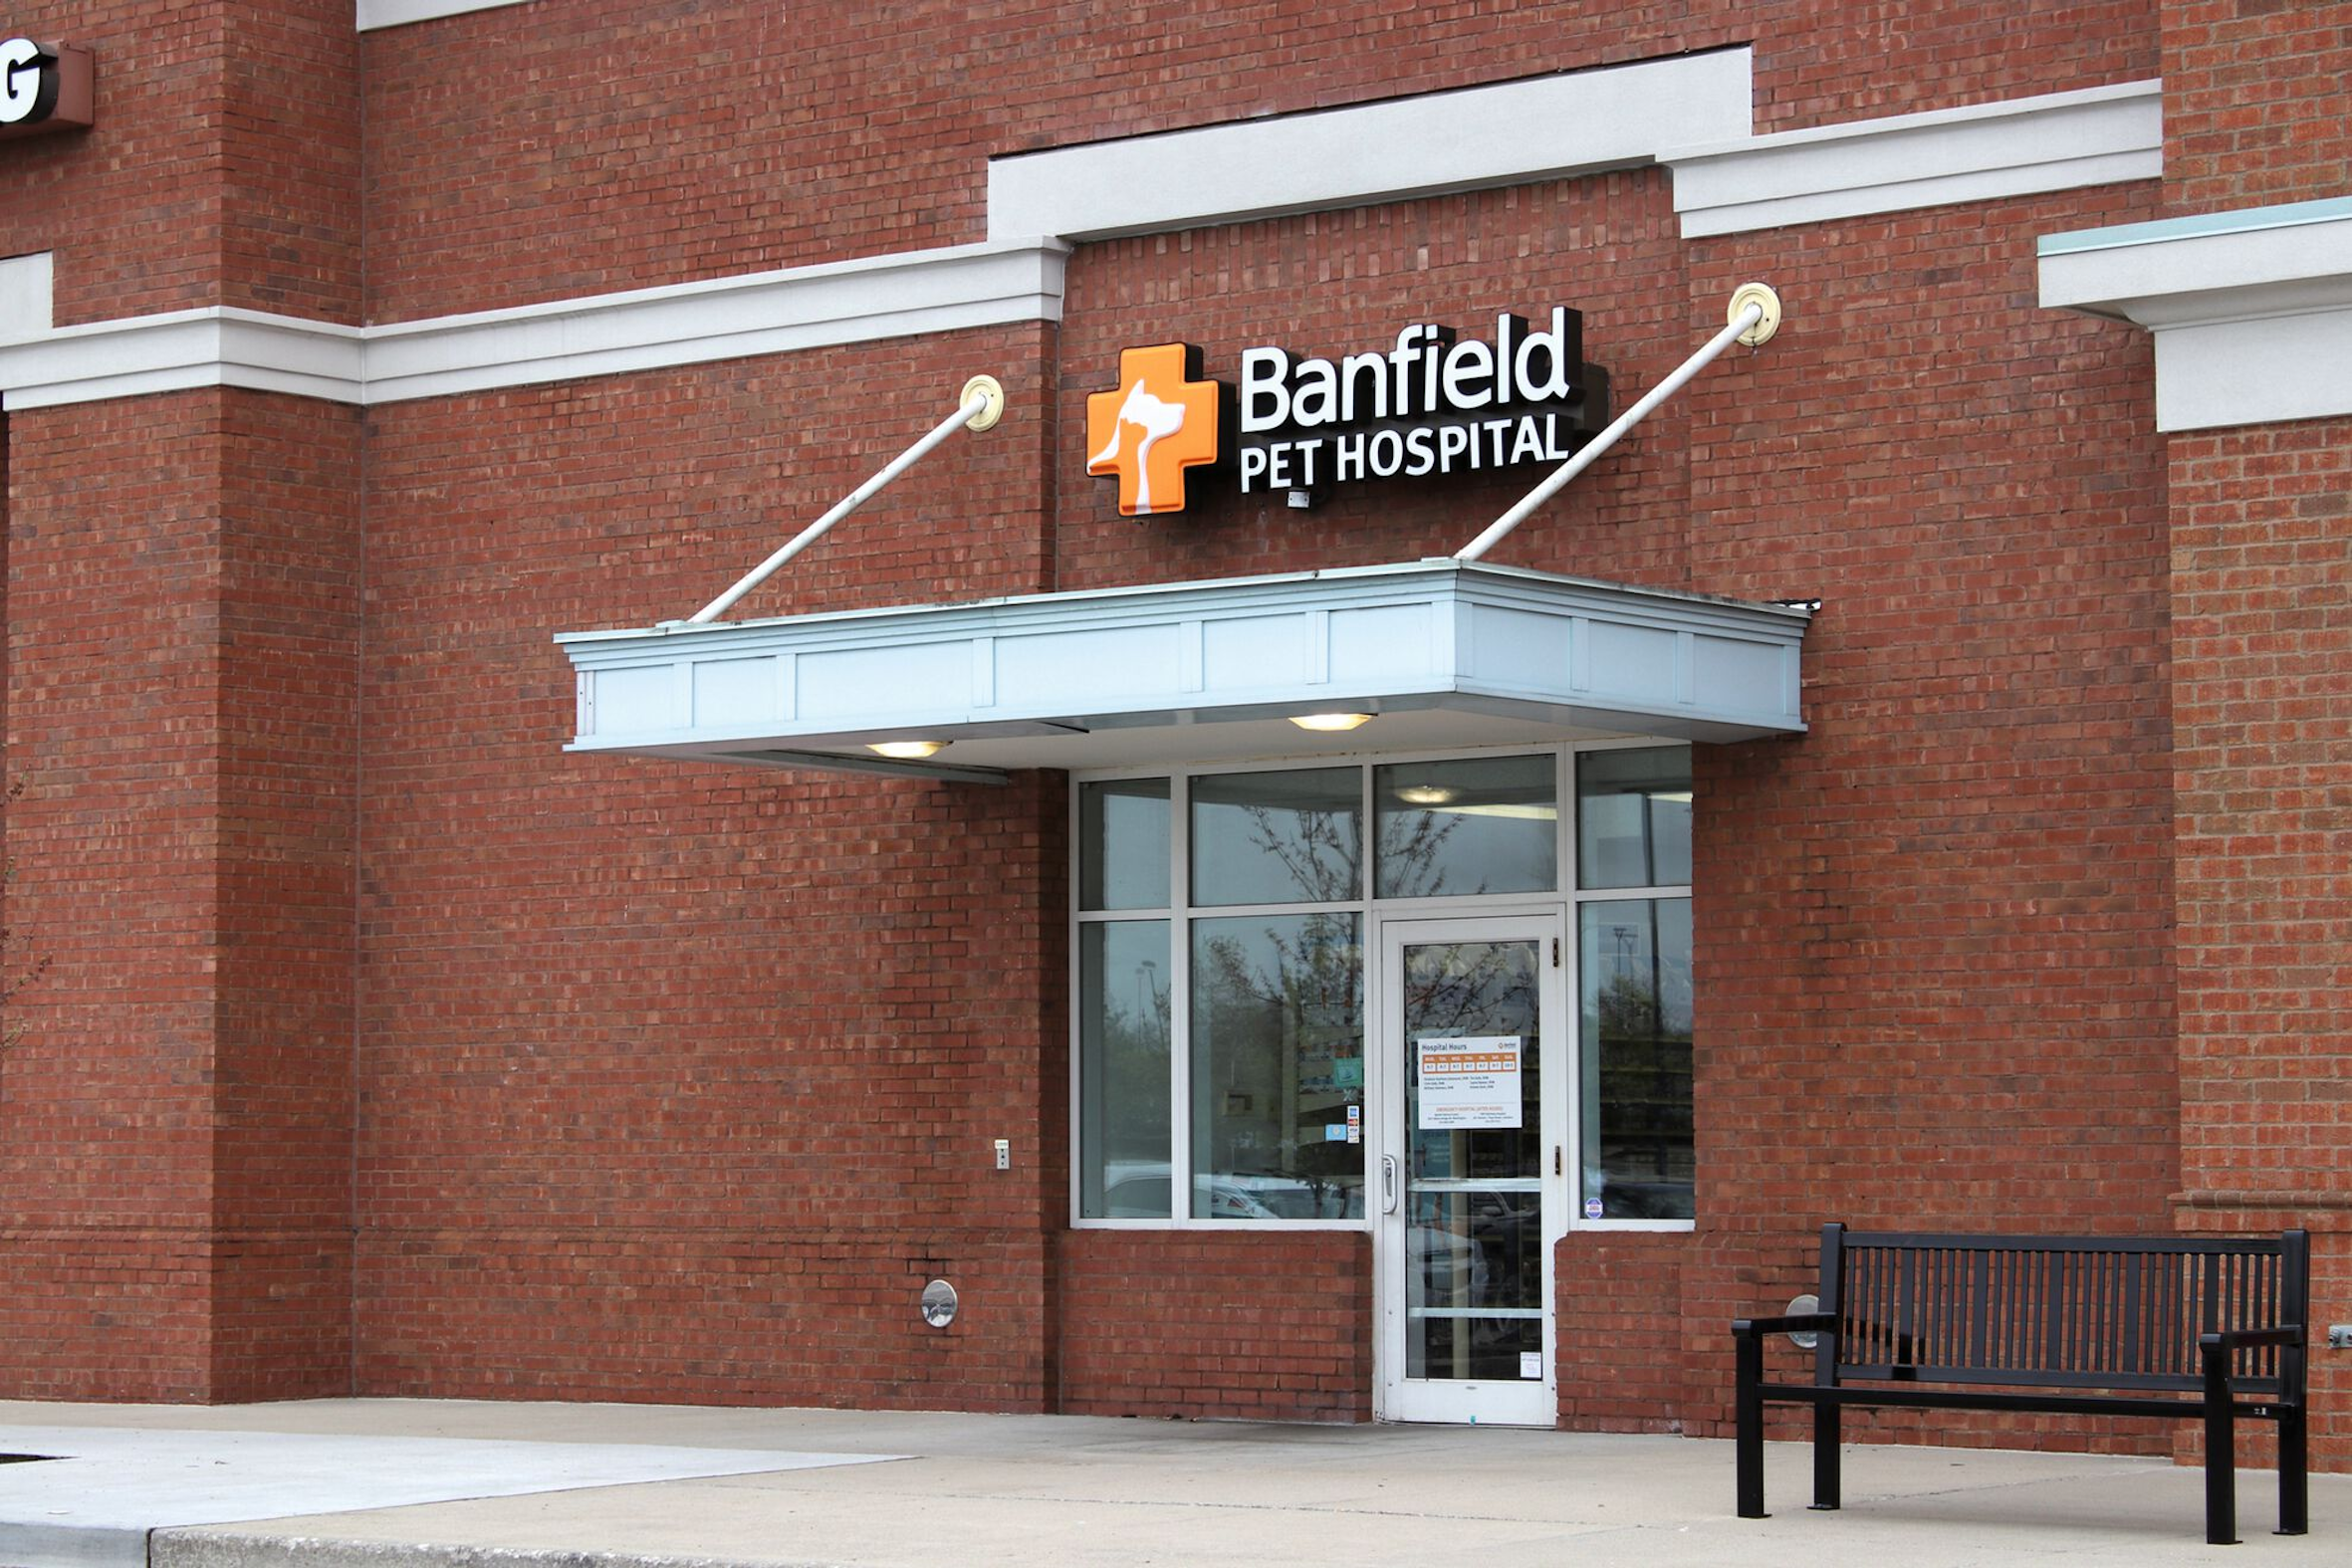 Mars Petcare besitzt gegenwärtig mehr als 2300 Praxen und Kliniken, die unter verschiedenen Namen firmieren, darunter Banfield in den USA.